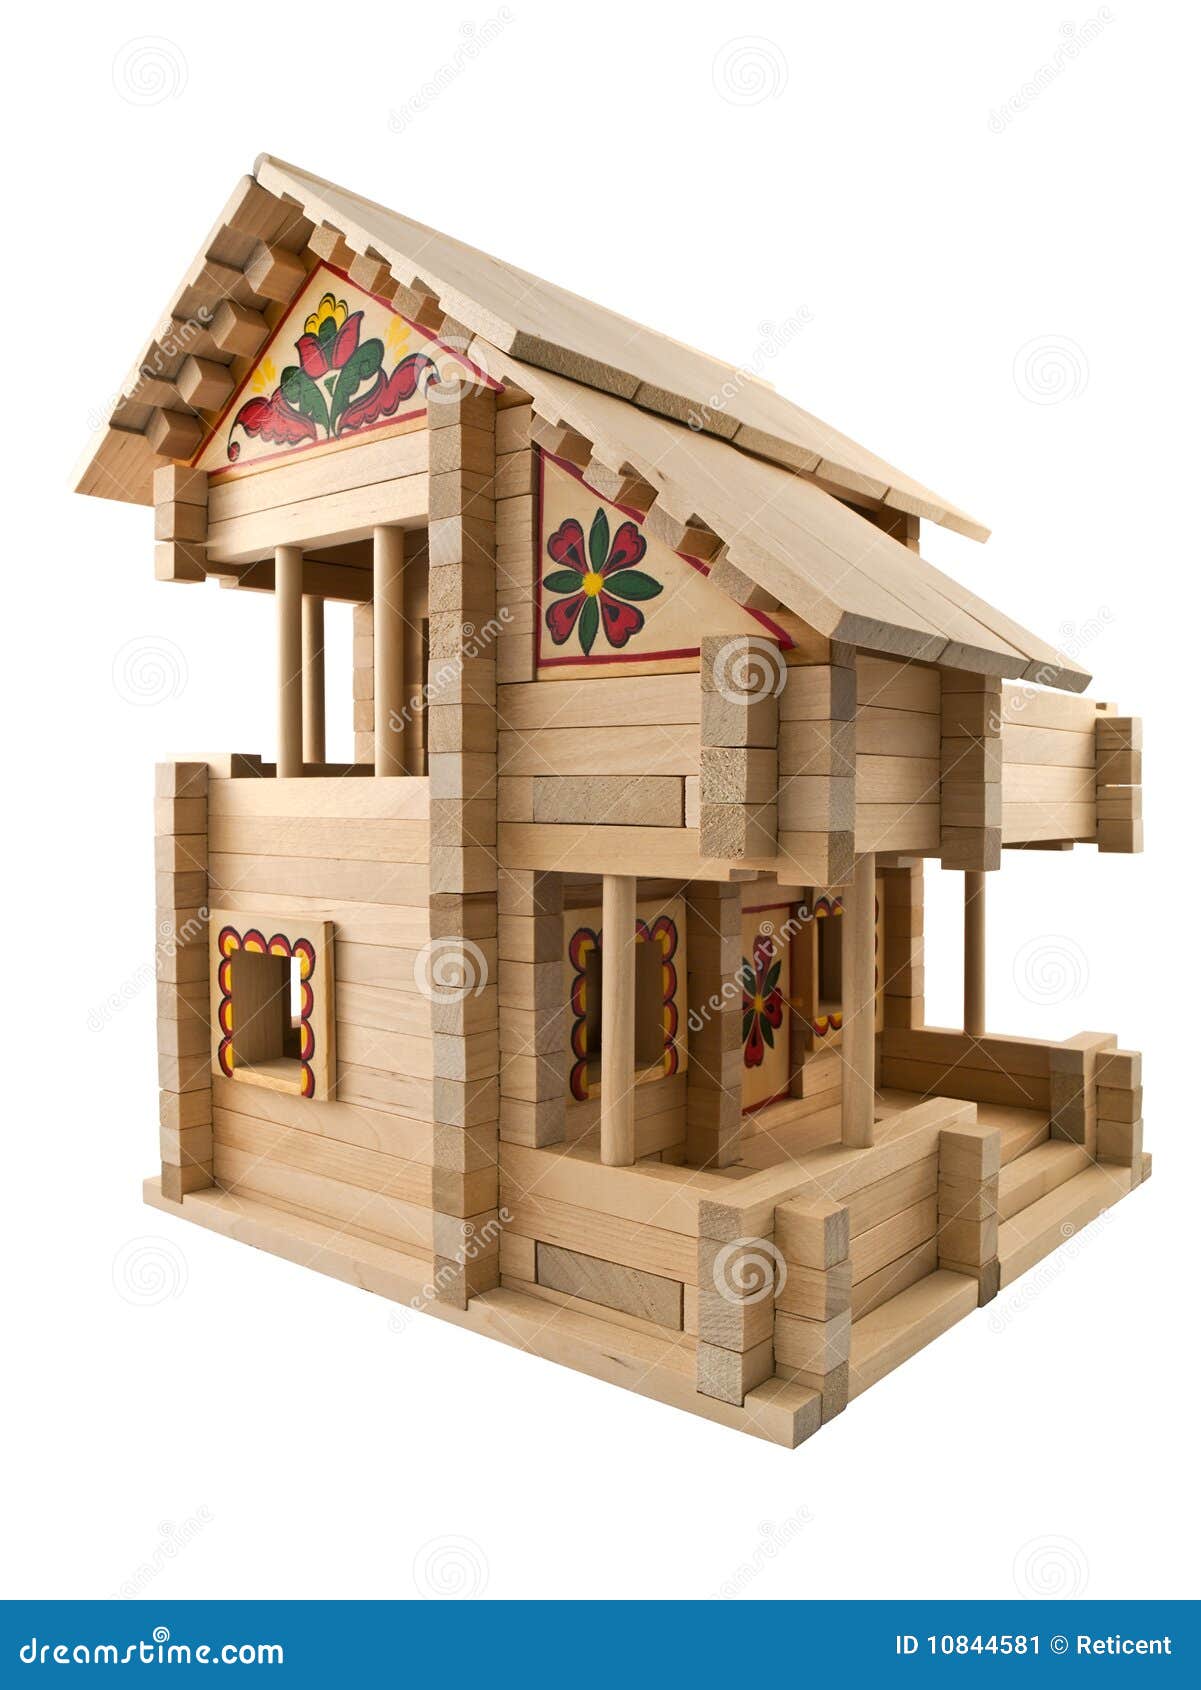 maison jouet exterieur en bois